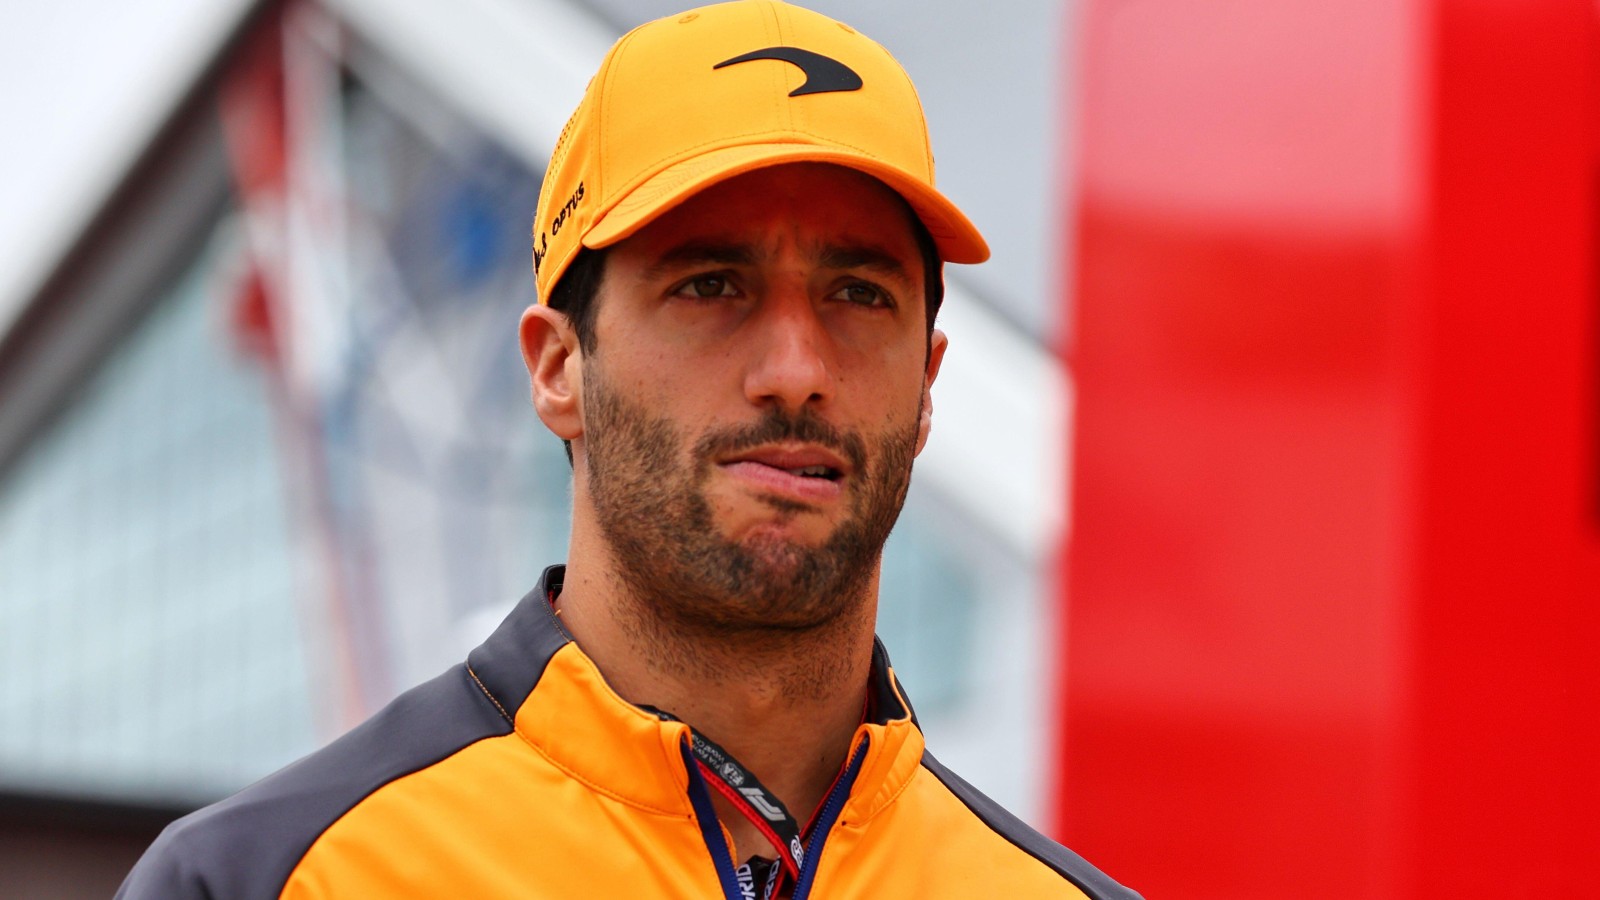 Daniel Ricciardo, McLaren, looking confused. England, July 2022.